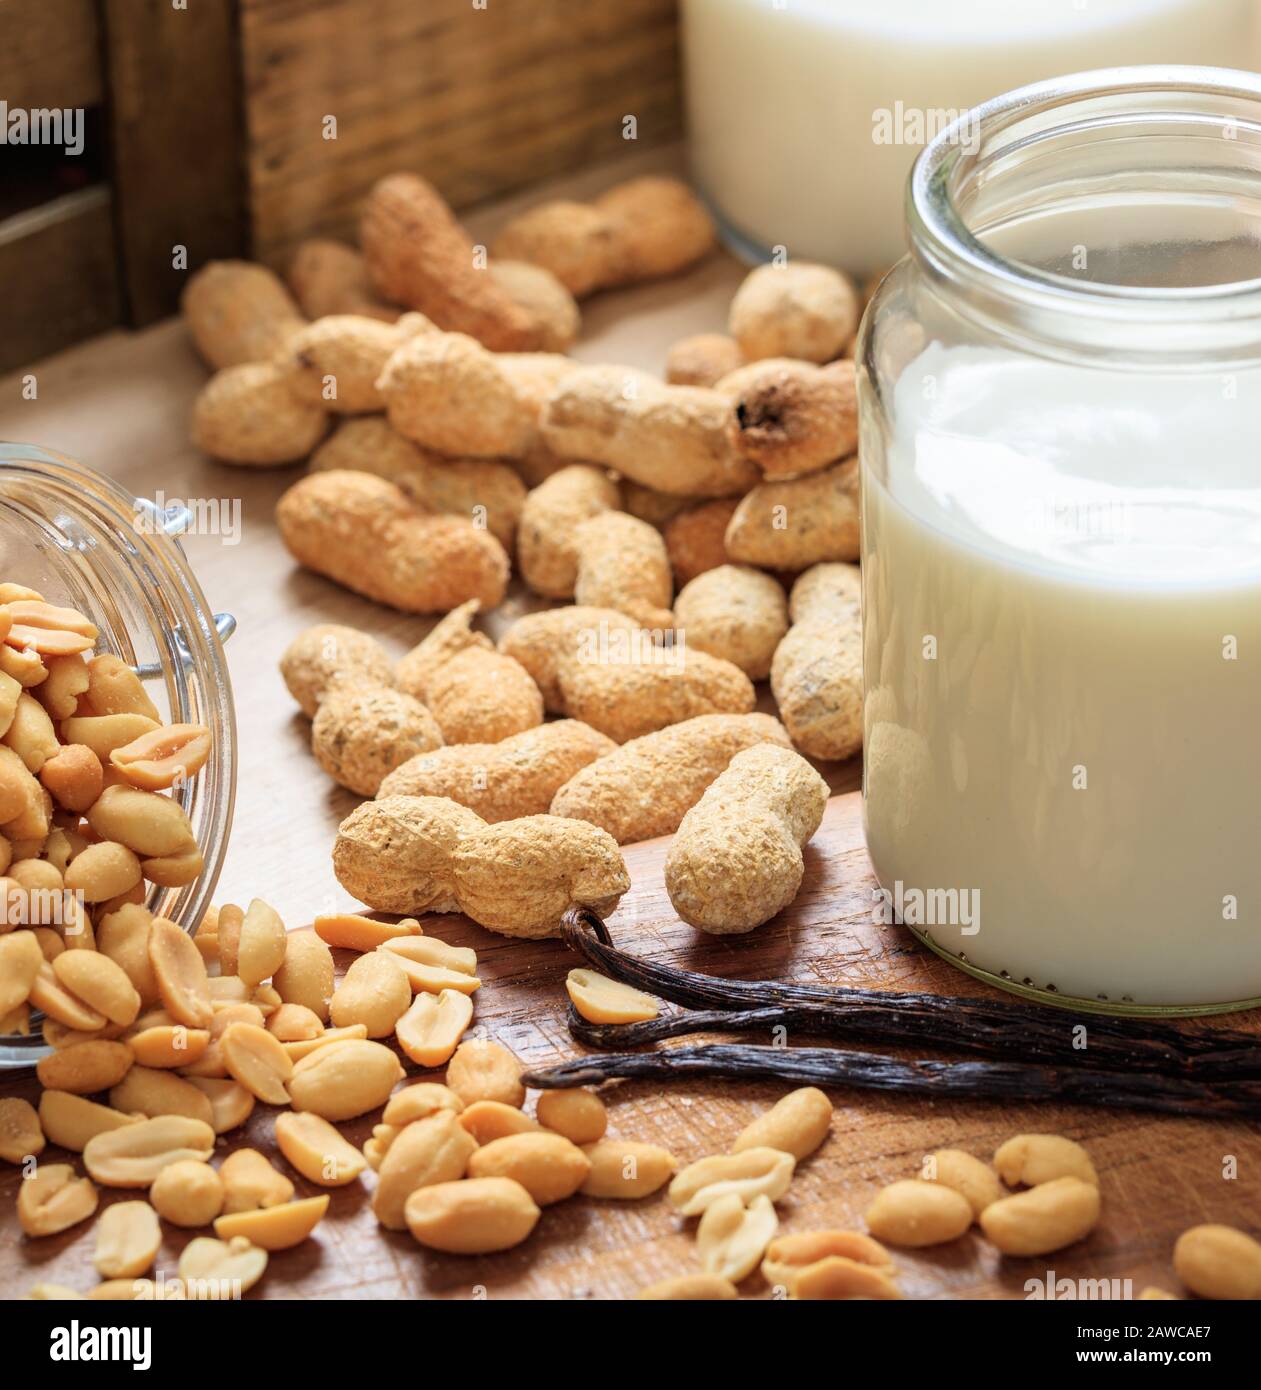 Erdnussmilch, kein Milchmilchersatz auf einem Holztisch. Nüsse und Glas mit Milch, laktosefreier Milchersatz für Veganer Stockfoto